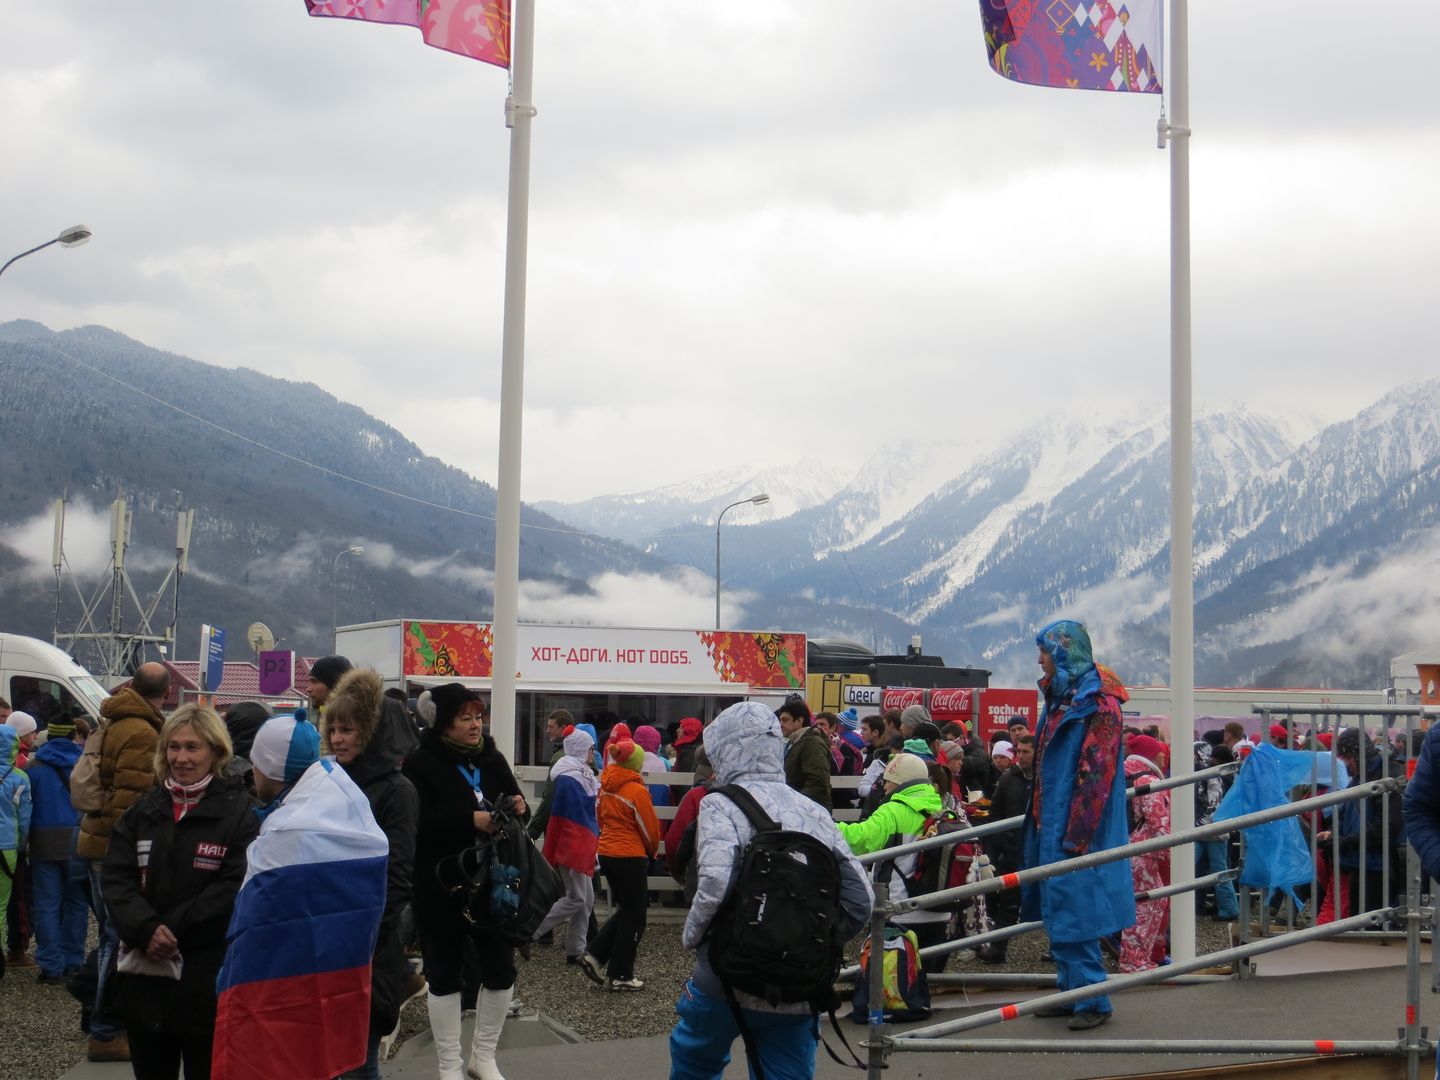 Олимпиада в Сочи. Февраль 2014. Горный кластер